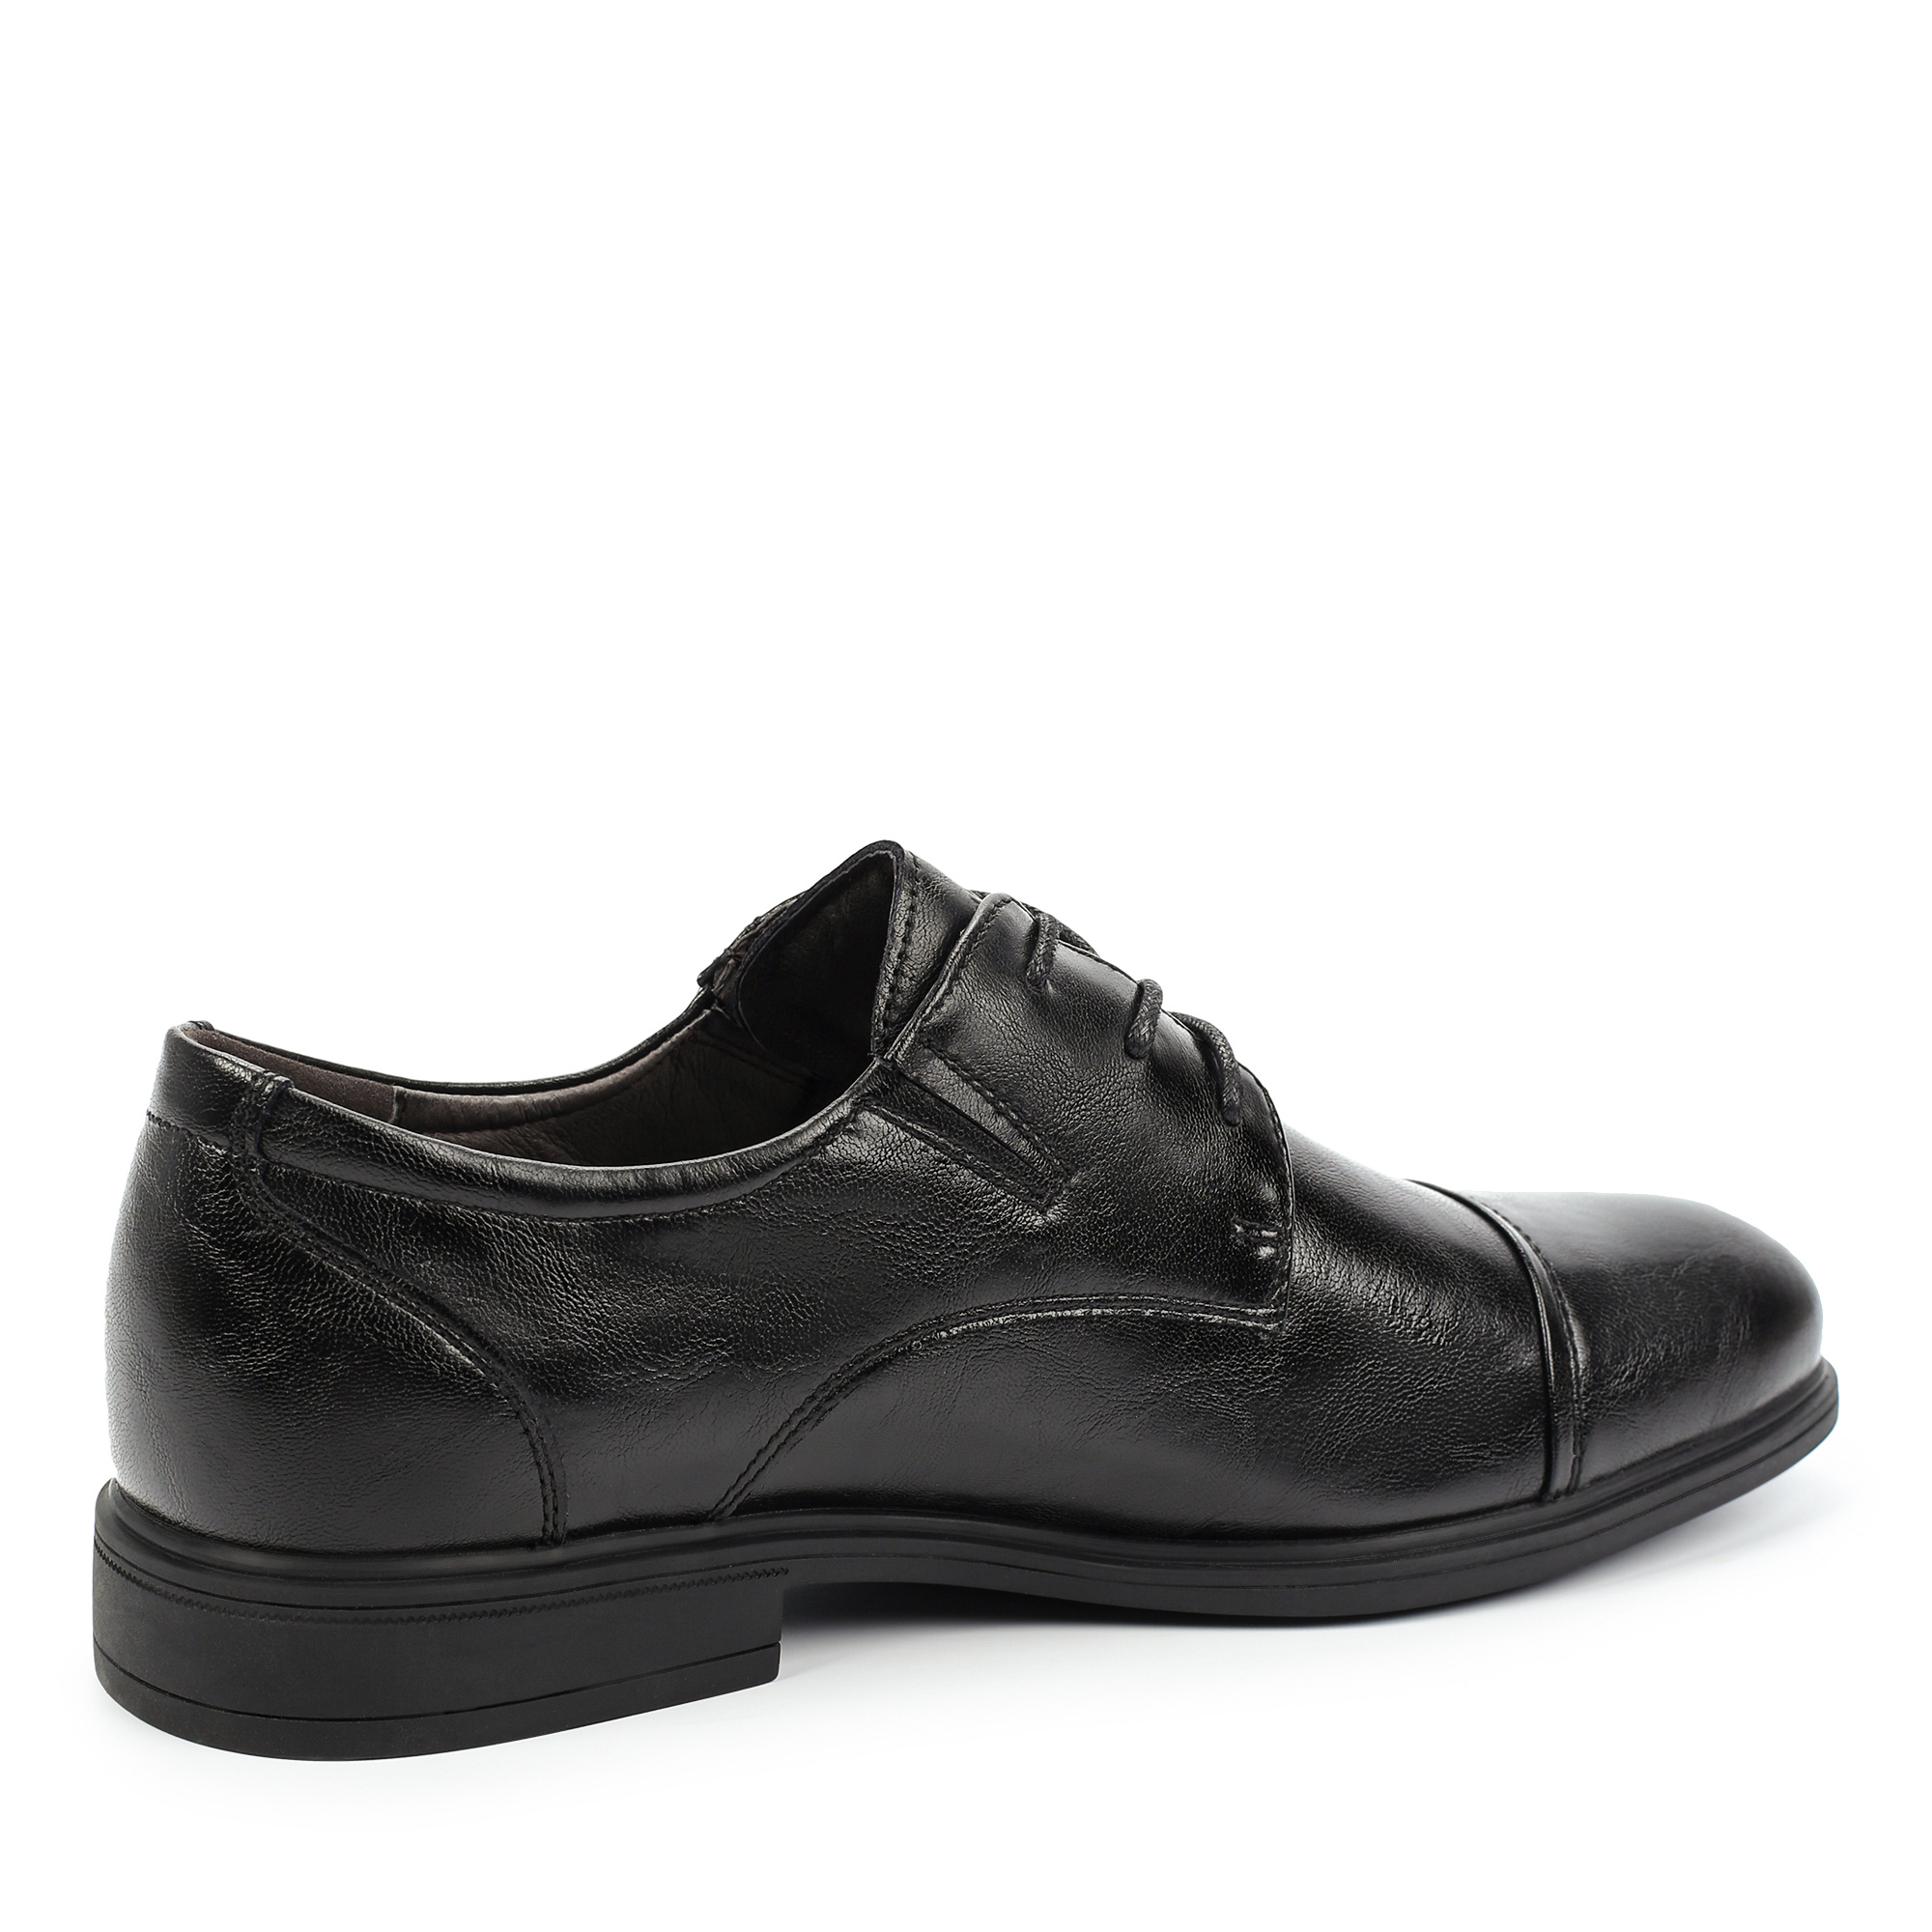 Туфли/полуботинки Thomas Munz 098-973A-1602, цвет черный, размер 40 - фото 3